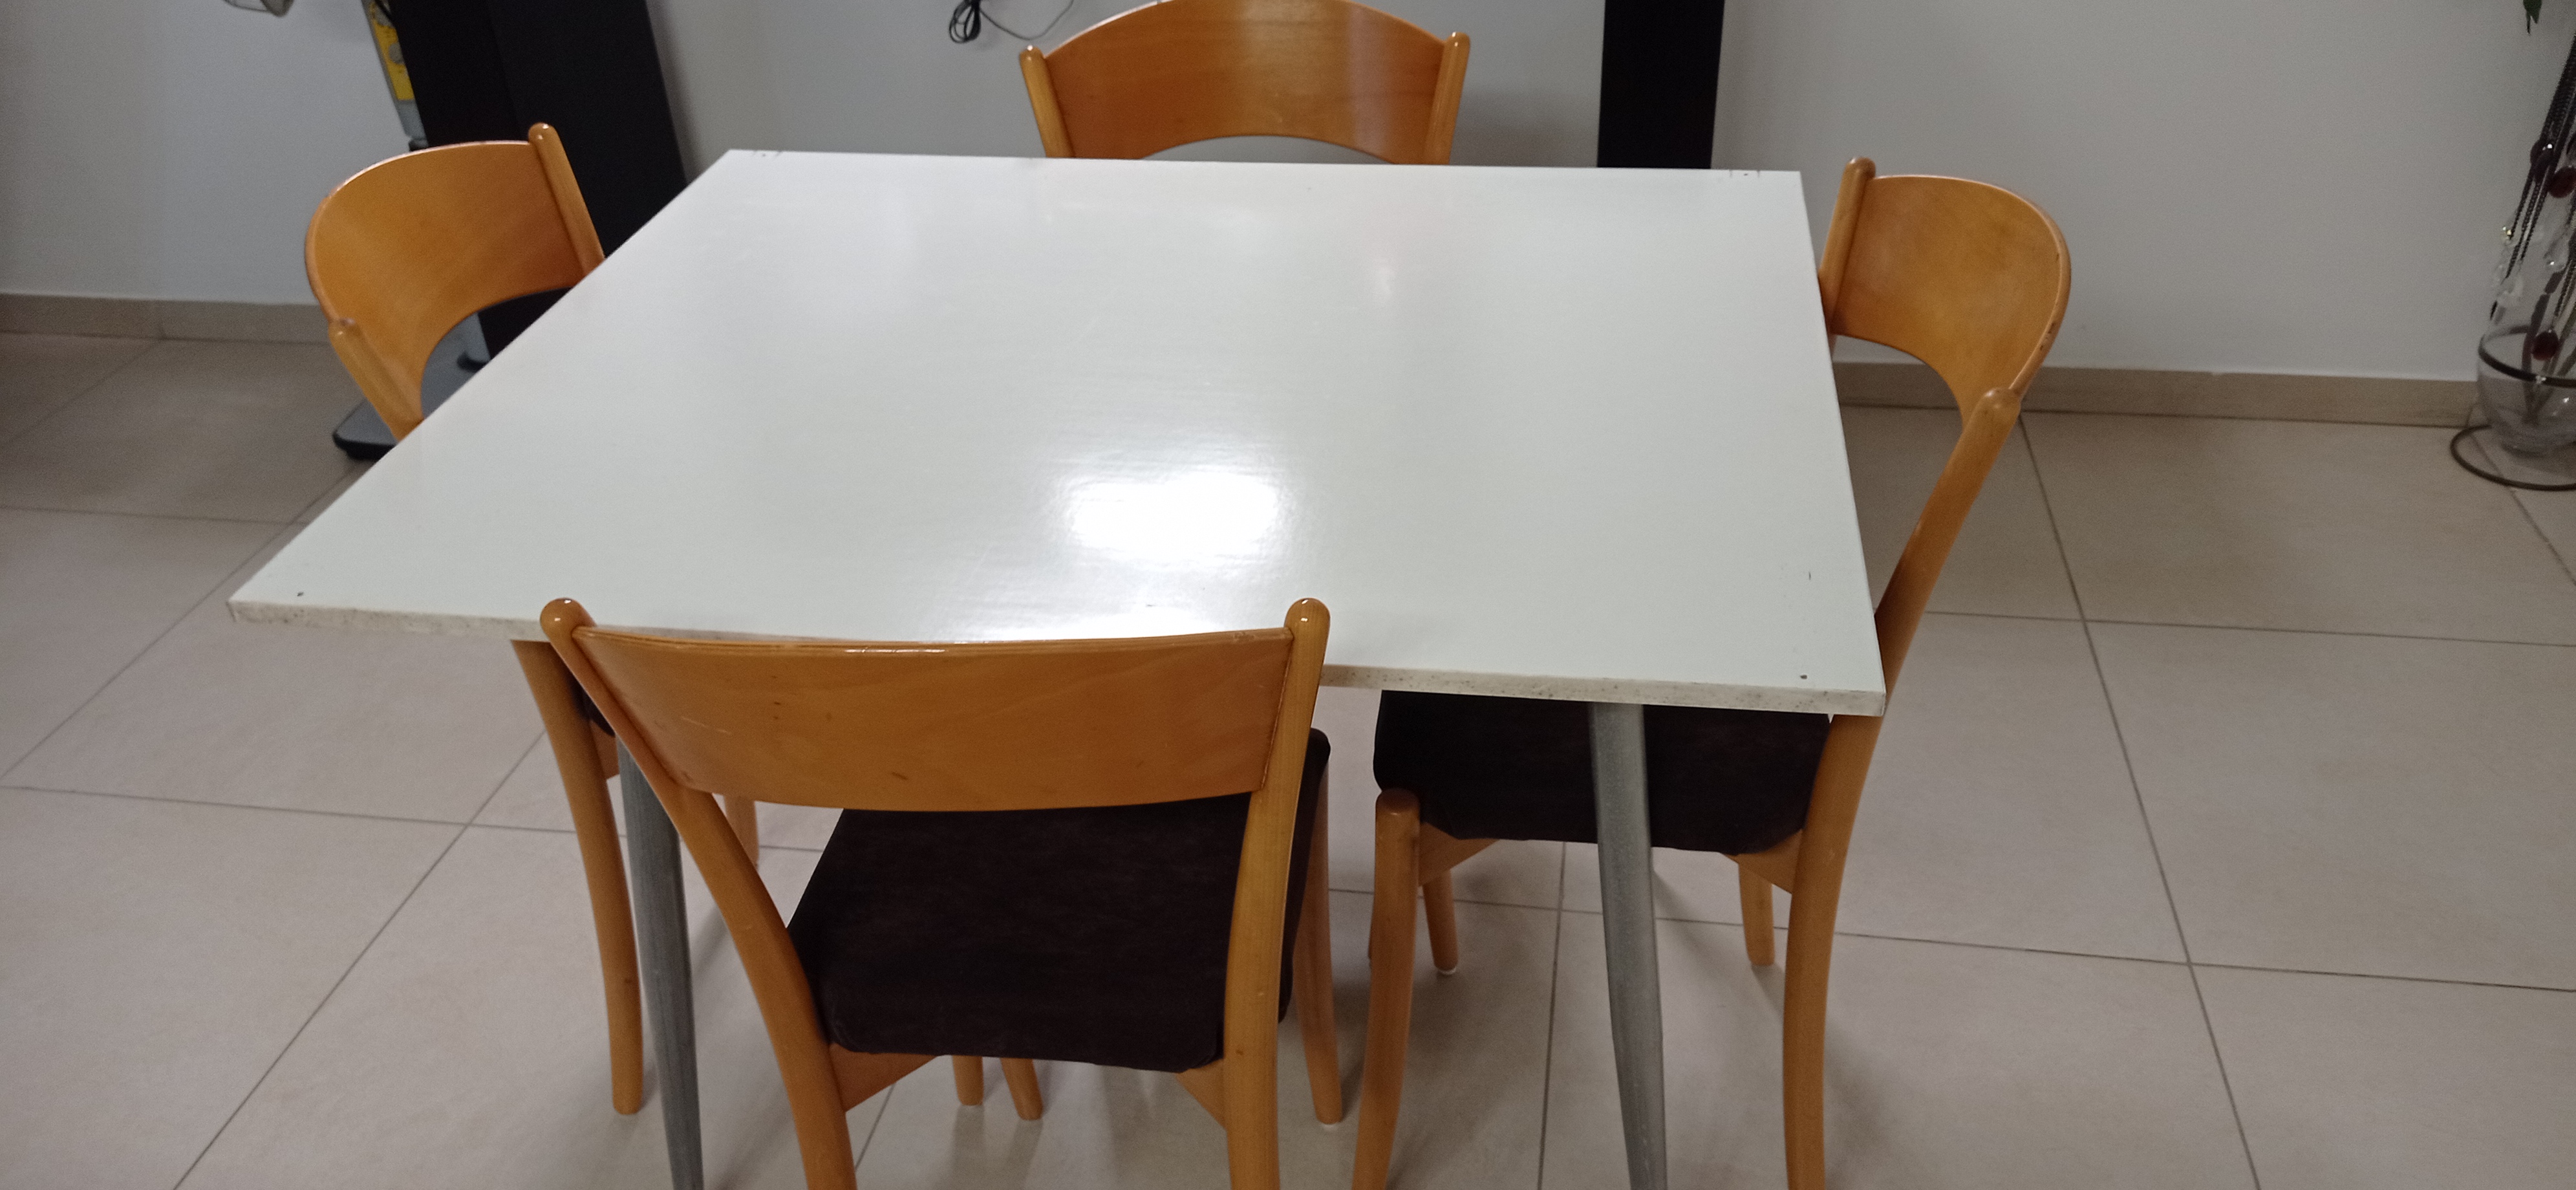 תמונה 1 ,שולחן +4 כיסטות למכירה בנשר ריהוט  שולחנות